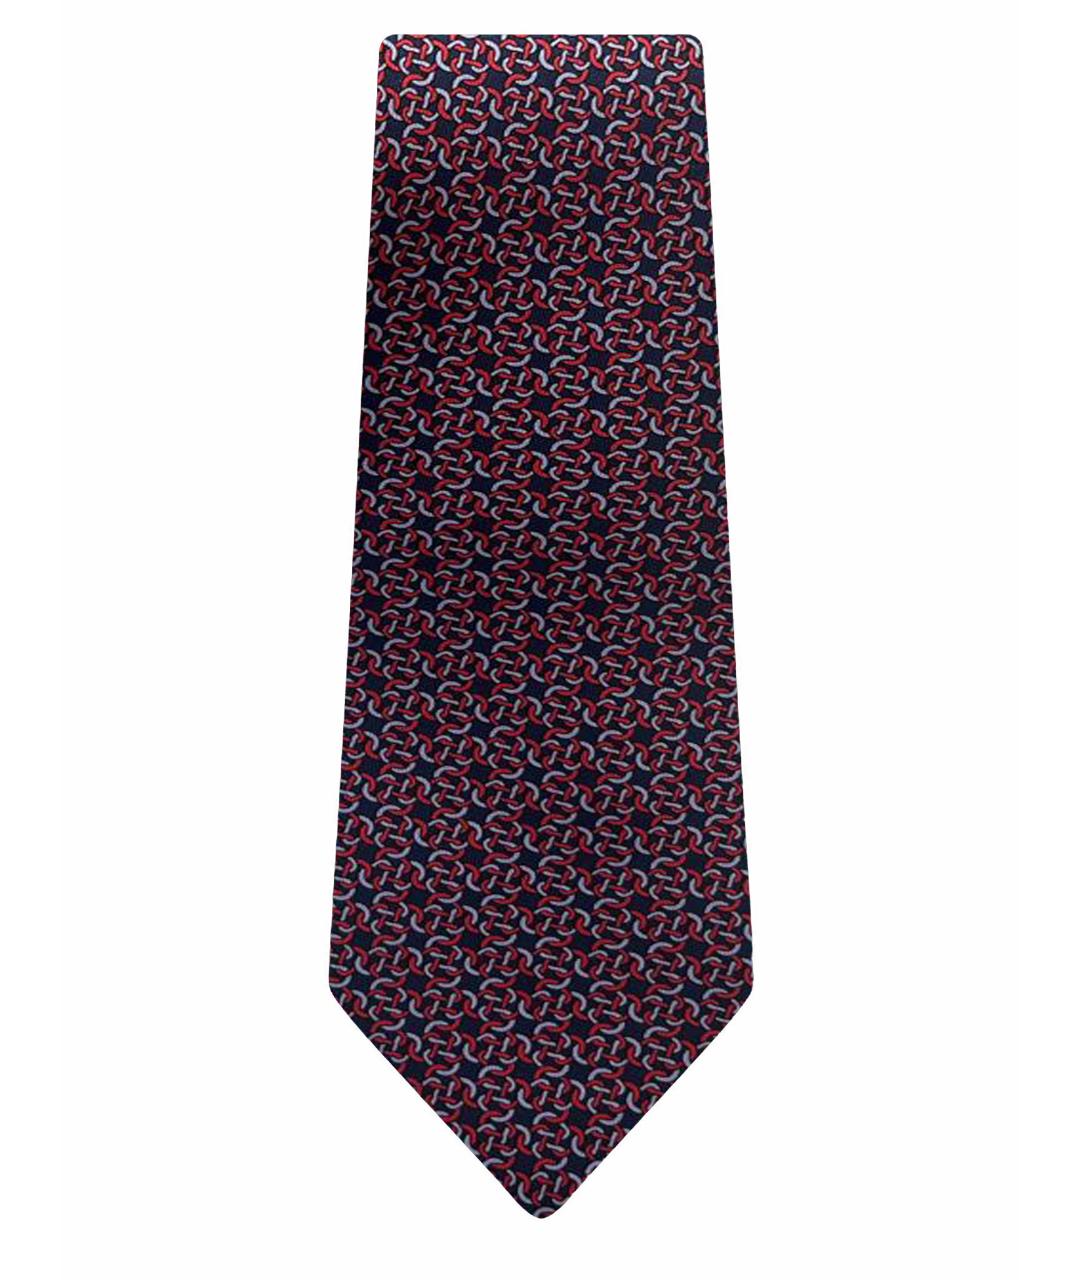 HERMES PRE-OWNED Красный шелковый галстук, фото 1